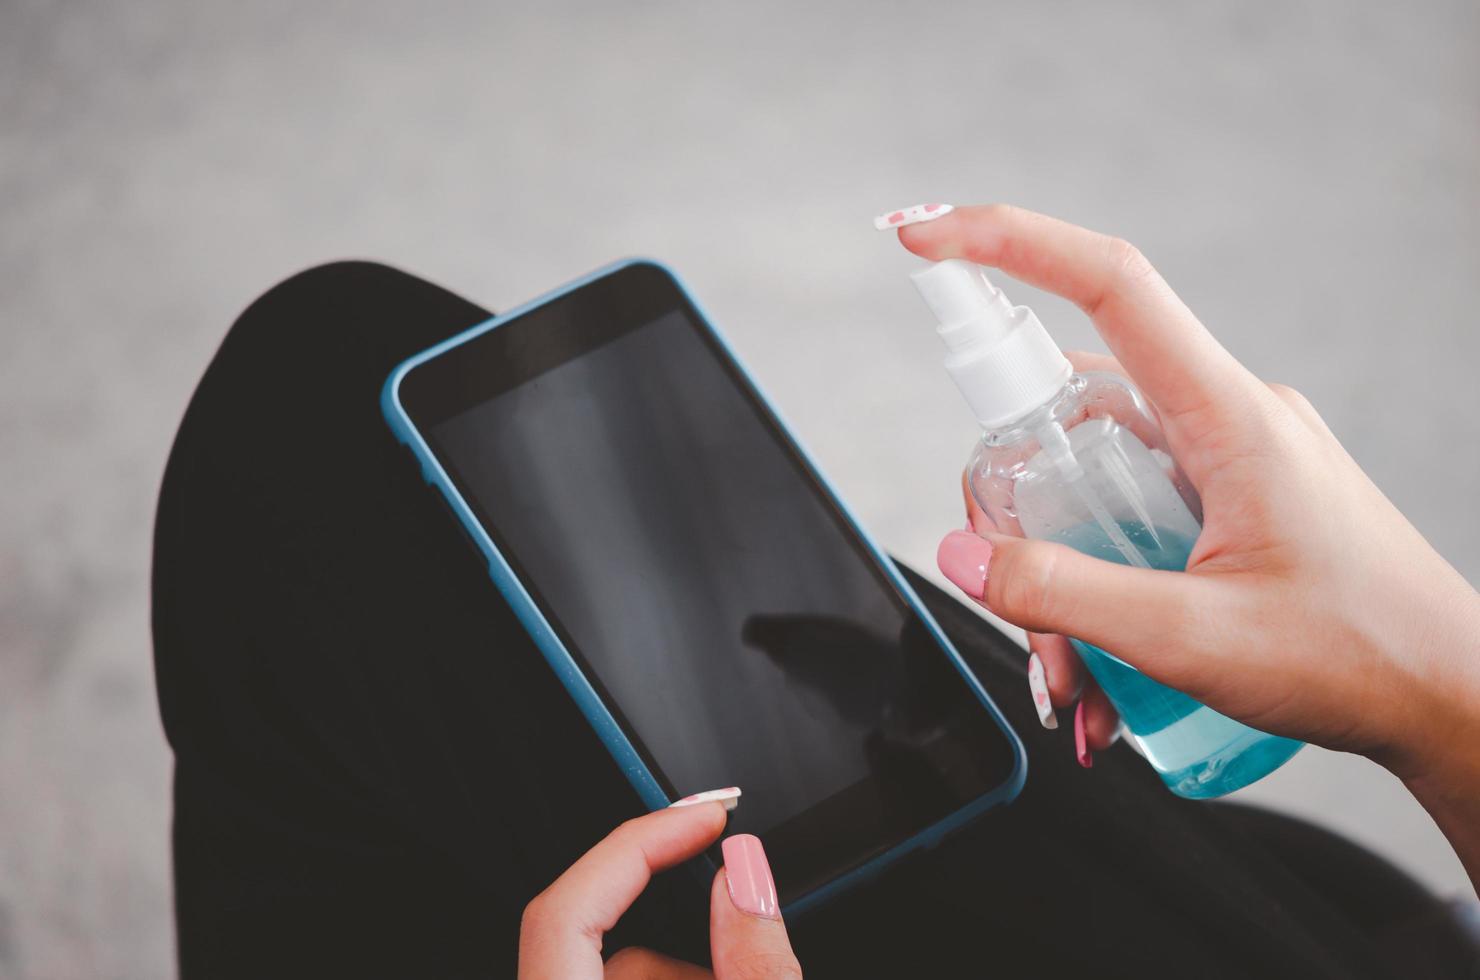 spray para desinfectar el teléfono móvil con alcohol. concepto de cuidado de la salud para prevenir enfermedades. foto